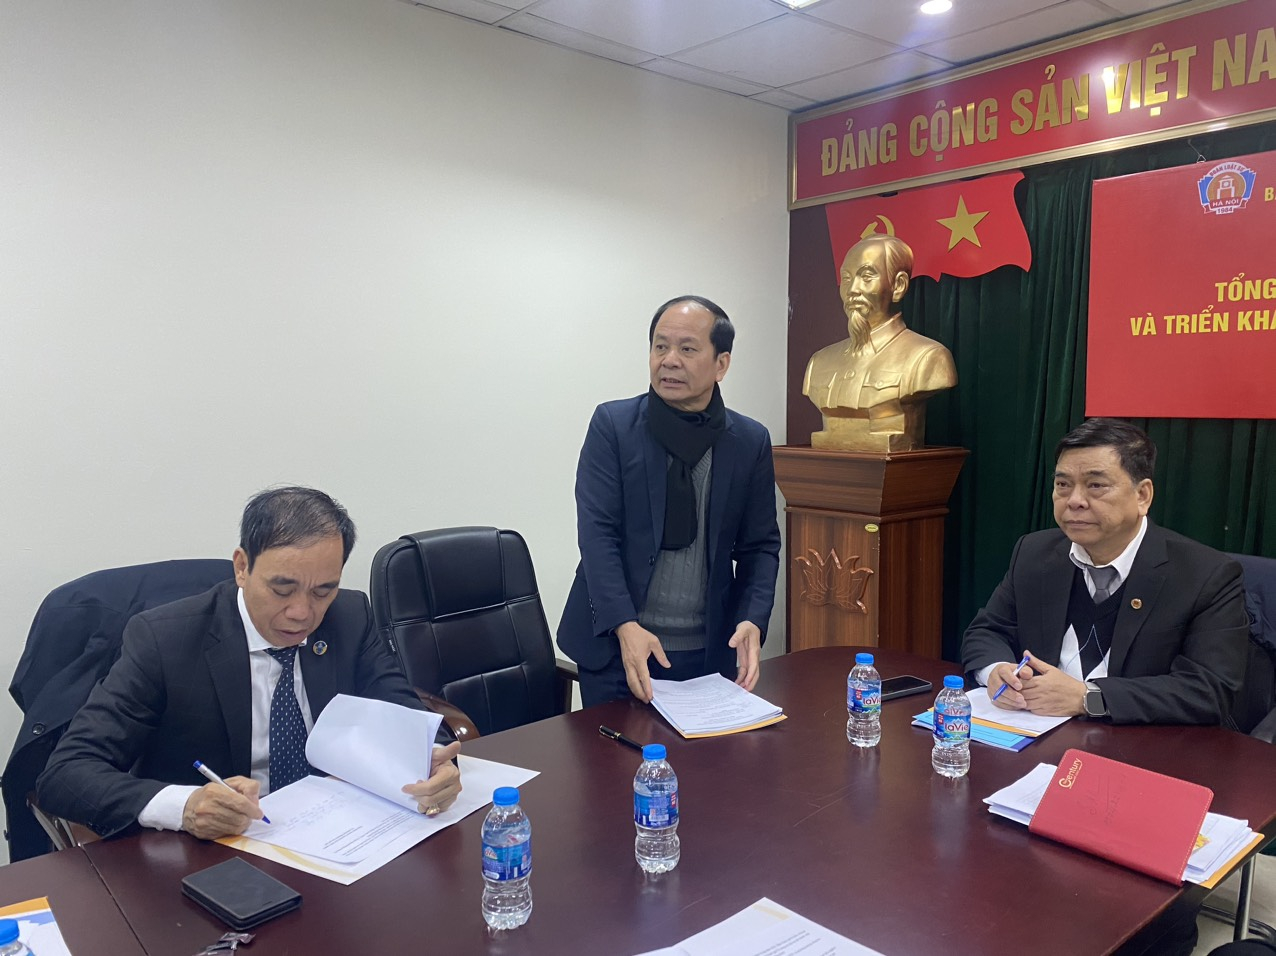 Luật sư Đào Ngọc Chuyền – Phó Chủ tịch Liên đoàn luật sư Việt Nam, Chủ nhiệm Đoàn luật sư TP Hà Nội phát biểu tại Hội nghị.